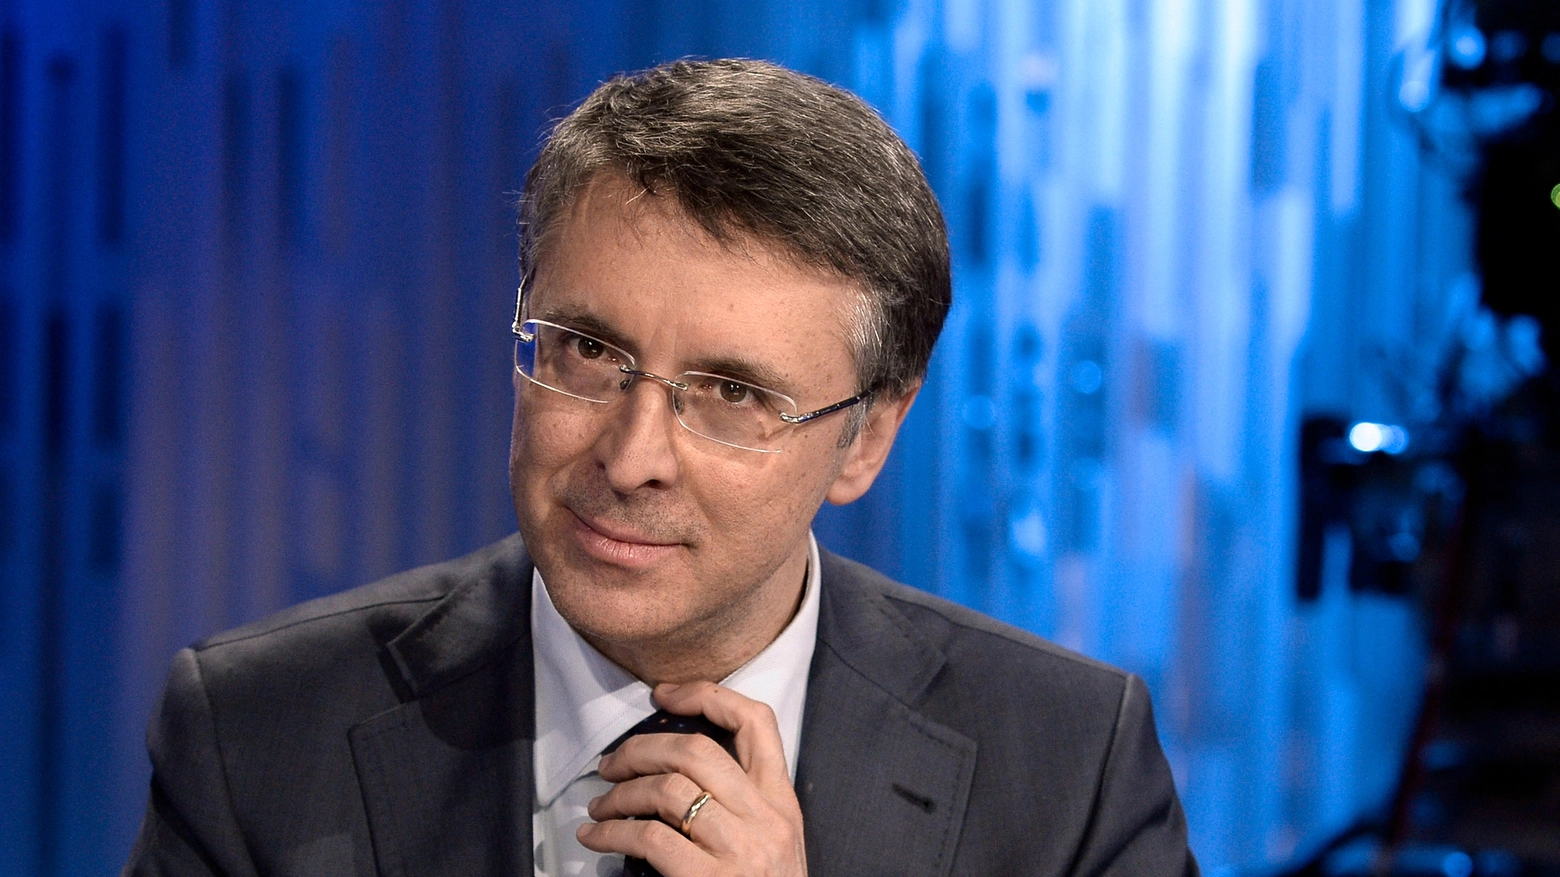 Raffaele Cantone (Imagoeconomica)